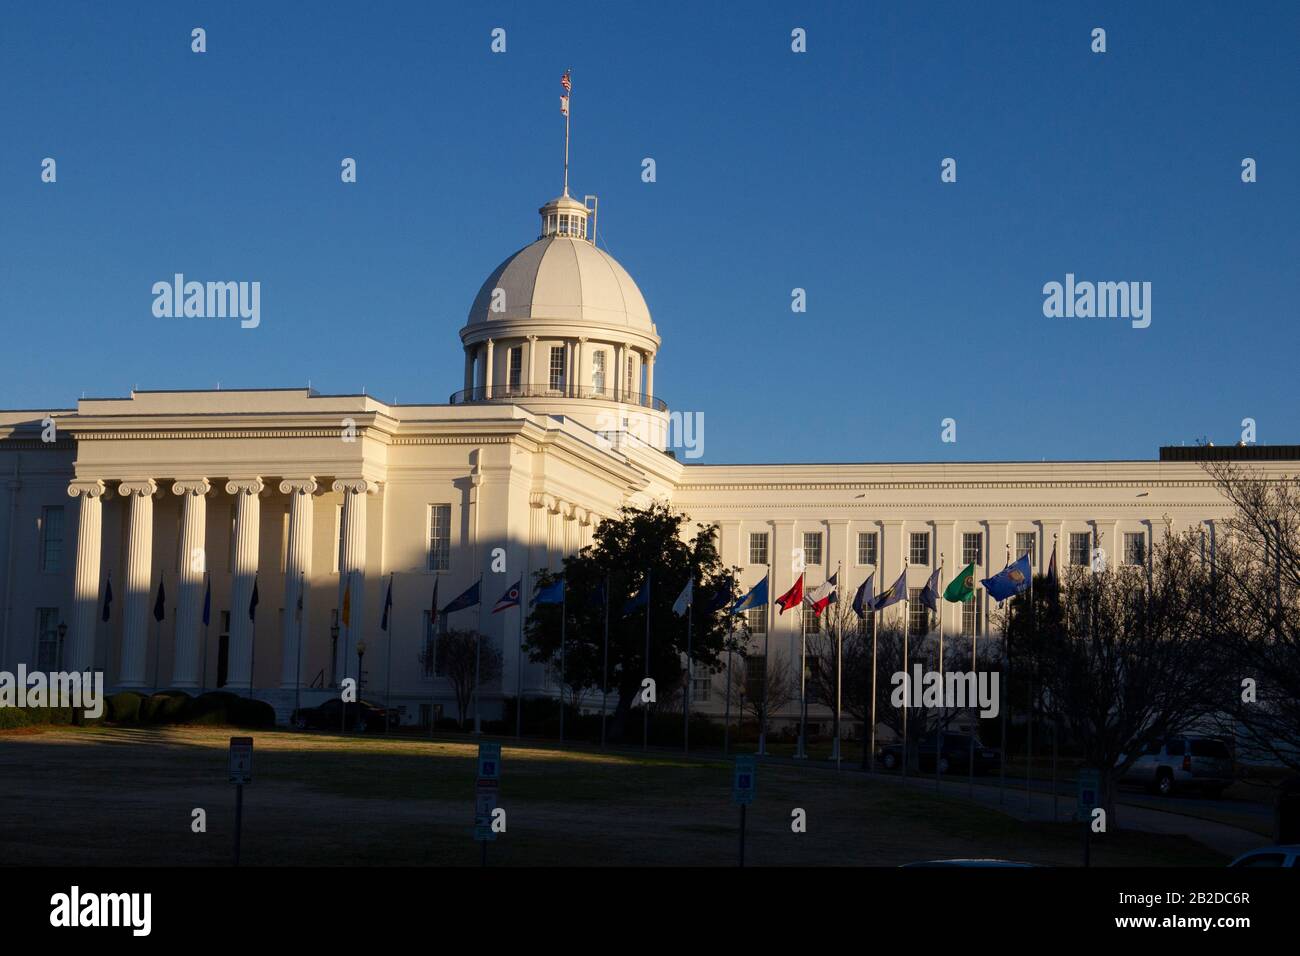 L'Alabama state Capitol Building di Montgomery Alabama si trova sulla Capitol Hill, originariamente Goat Hill. Foto Stock